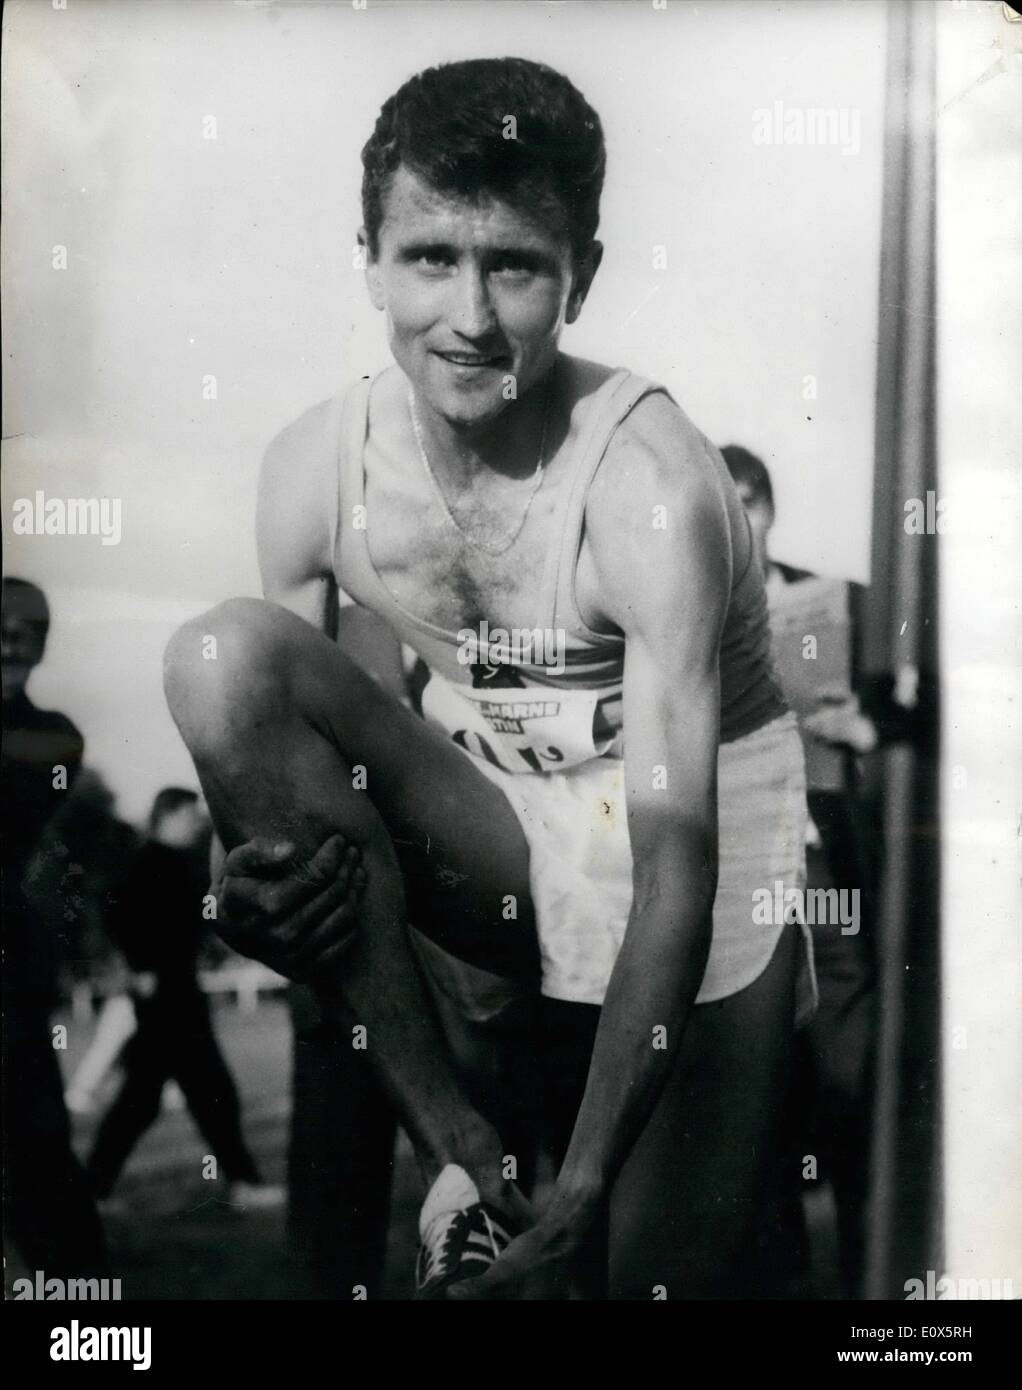 Juin 06, 1965 - FRANÇAIS JAZY BREAKS PLUS deux records : M.JAZY, de la France, mercredi dernier, a battu le record mondial de 3 000 mètres et deux milles de gagner une course de deux milles contre Ron Clarke de l'Australie à Melun, France. Il a remporté la course en 8 mi 22,6 secondes et adopté le 3 000 mètres en 7 min 49 secs. Clarke, qui détient les records du monde de trois, six et dix kilomètres, et 5 000 et 10 000 mètres, a terminé une vingtaine de mètres derrière JAZY. PHOTO MONTRE JAZY vu après sa grande course à Melun. Banque D'Images